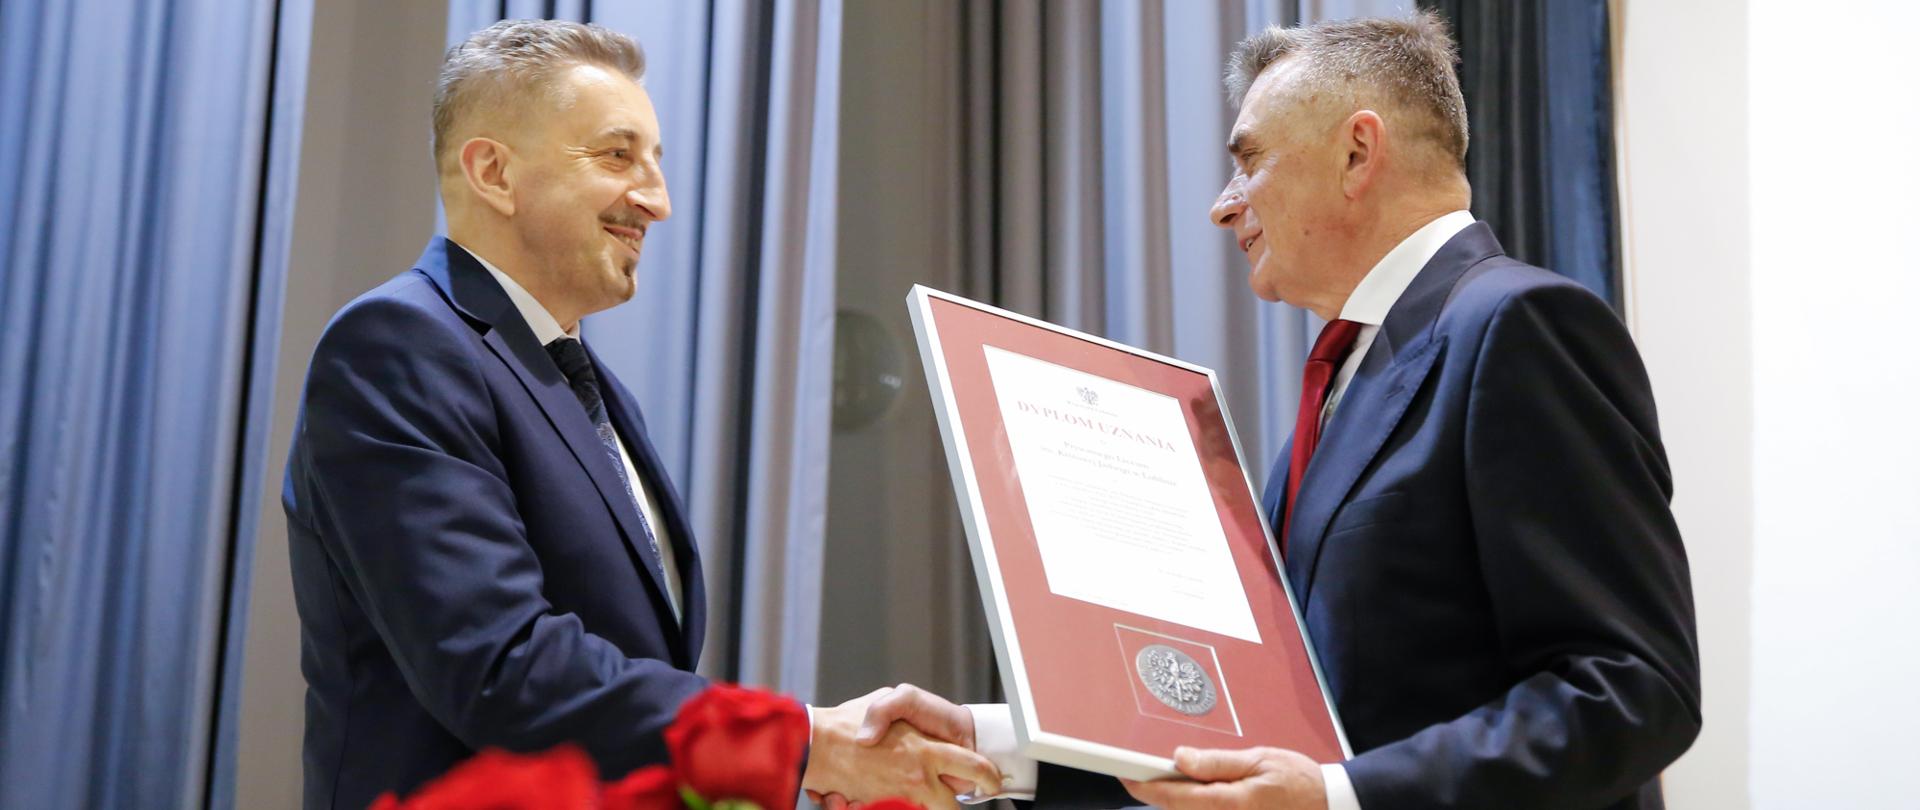 Wojewoda lubelski wręcza dyplom uznania dyrektorowi szkoły 